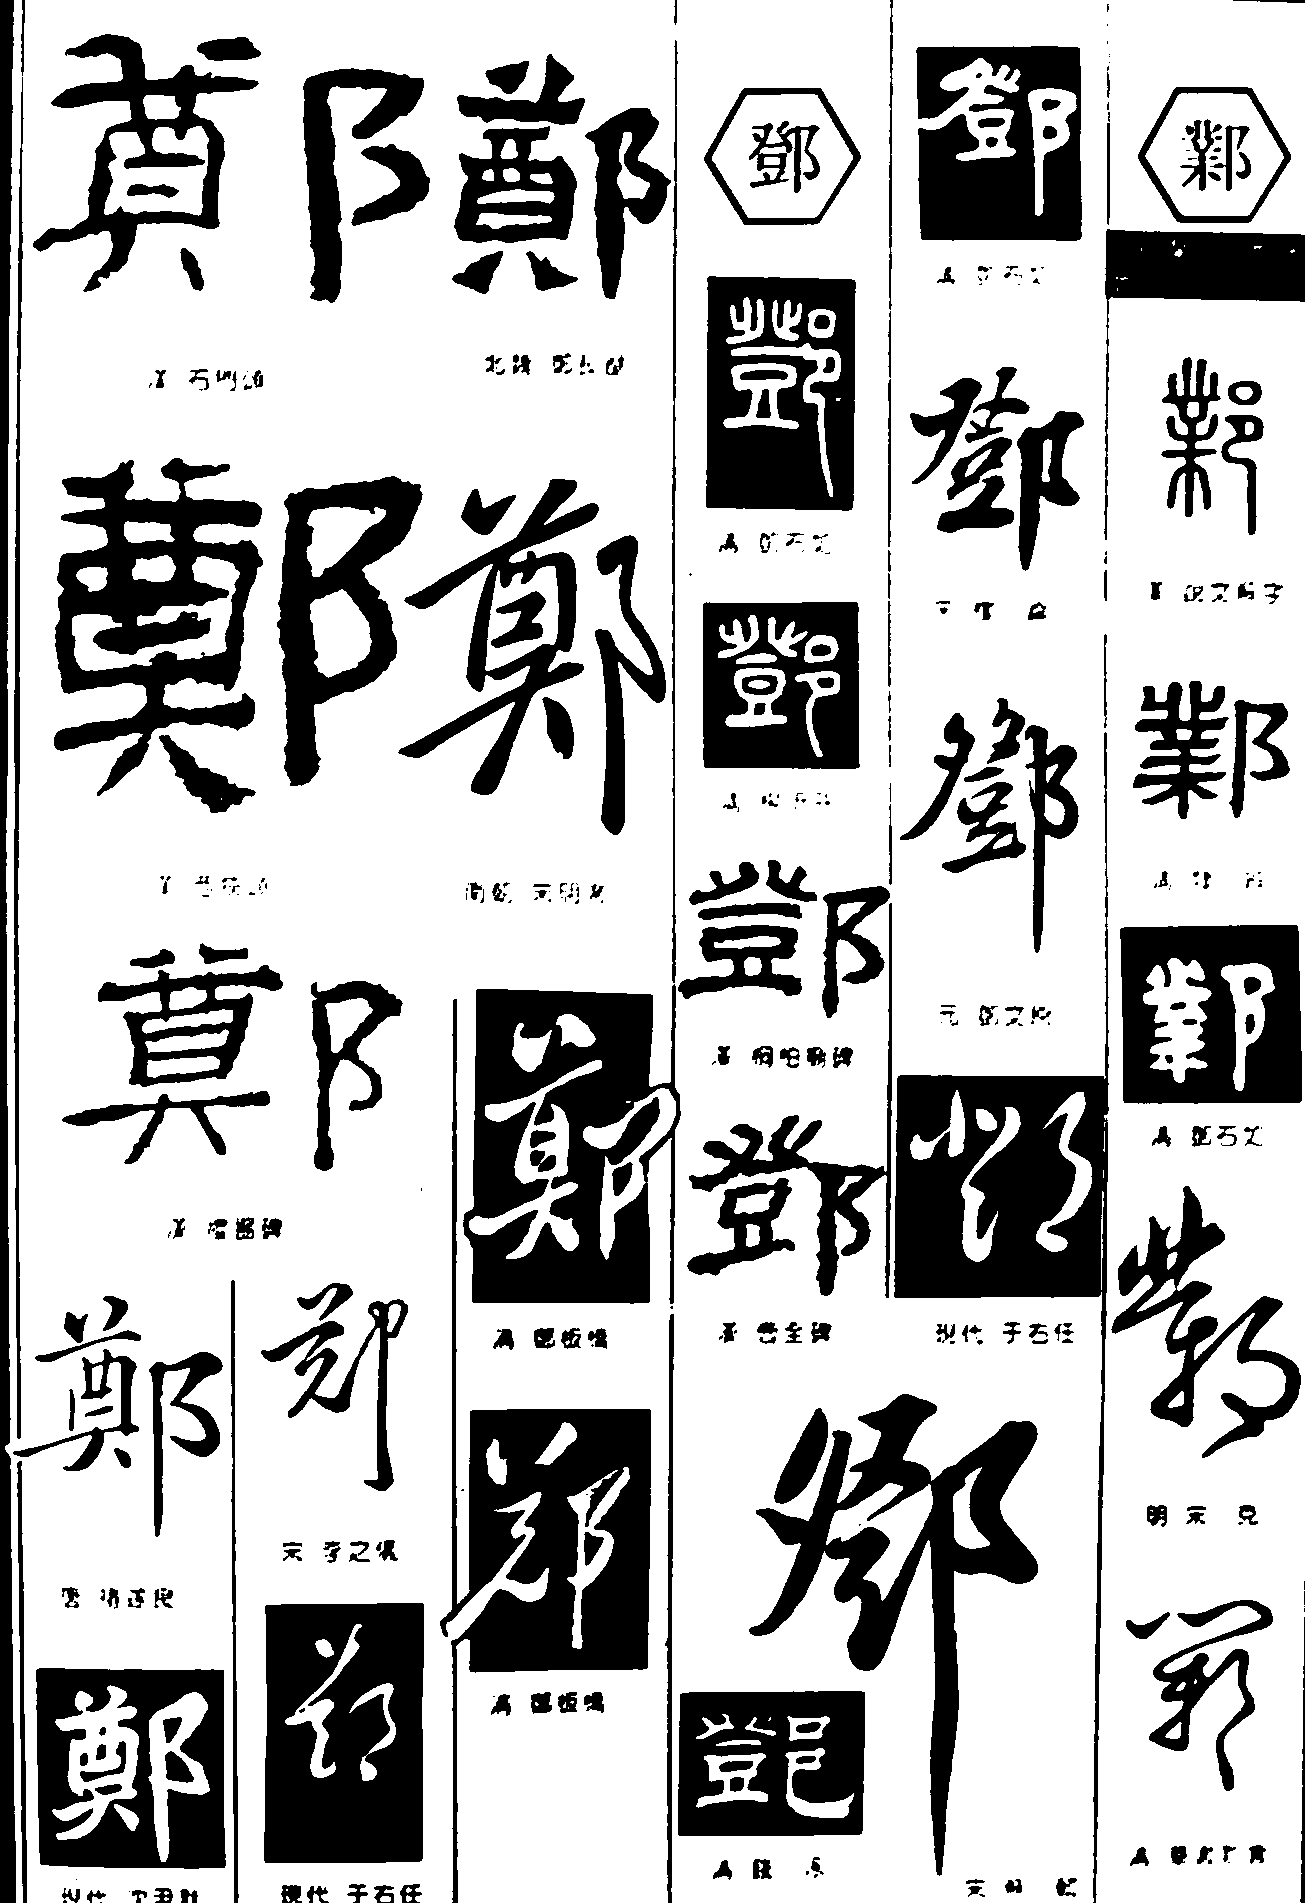 郑登邺 艺术字 毛笔字 书法字 繁体 标志设计